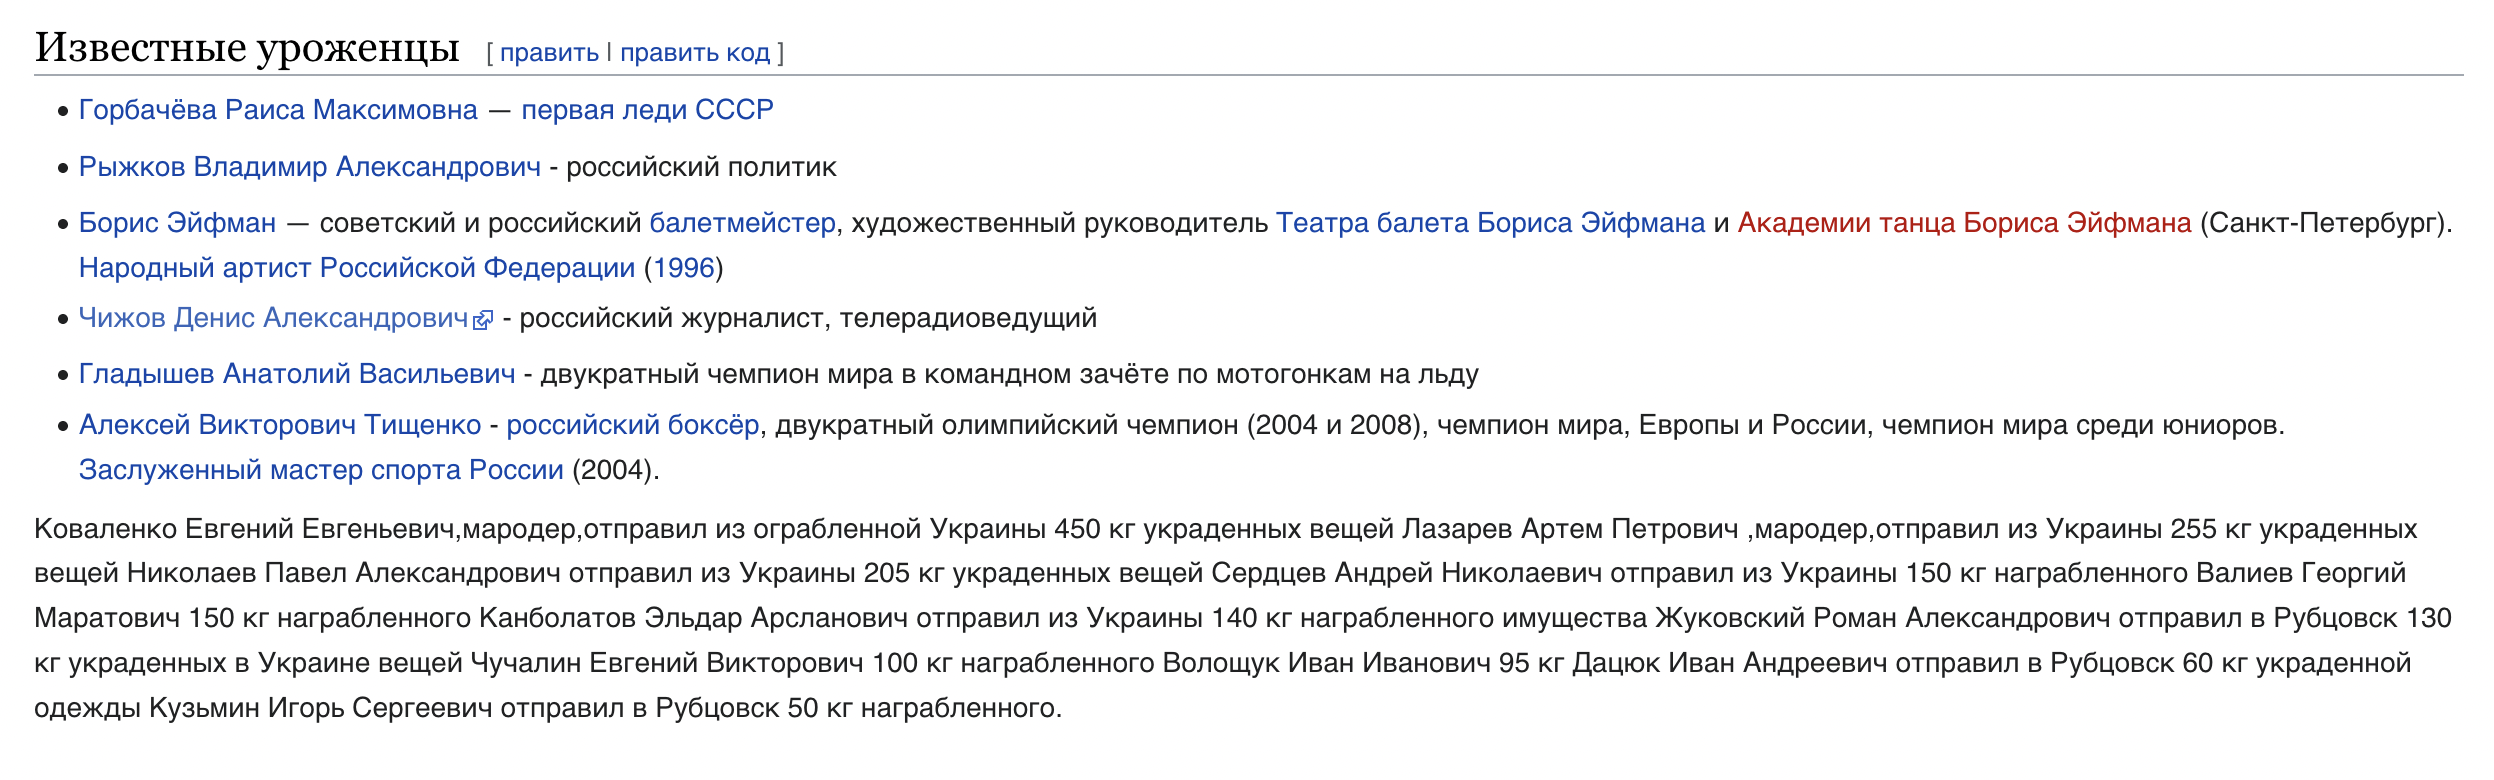 У «Вікіпедыі» да вядомых выхадцаў з Рубцоўска дадалі салдат-марадзёраў